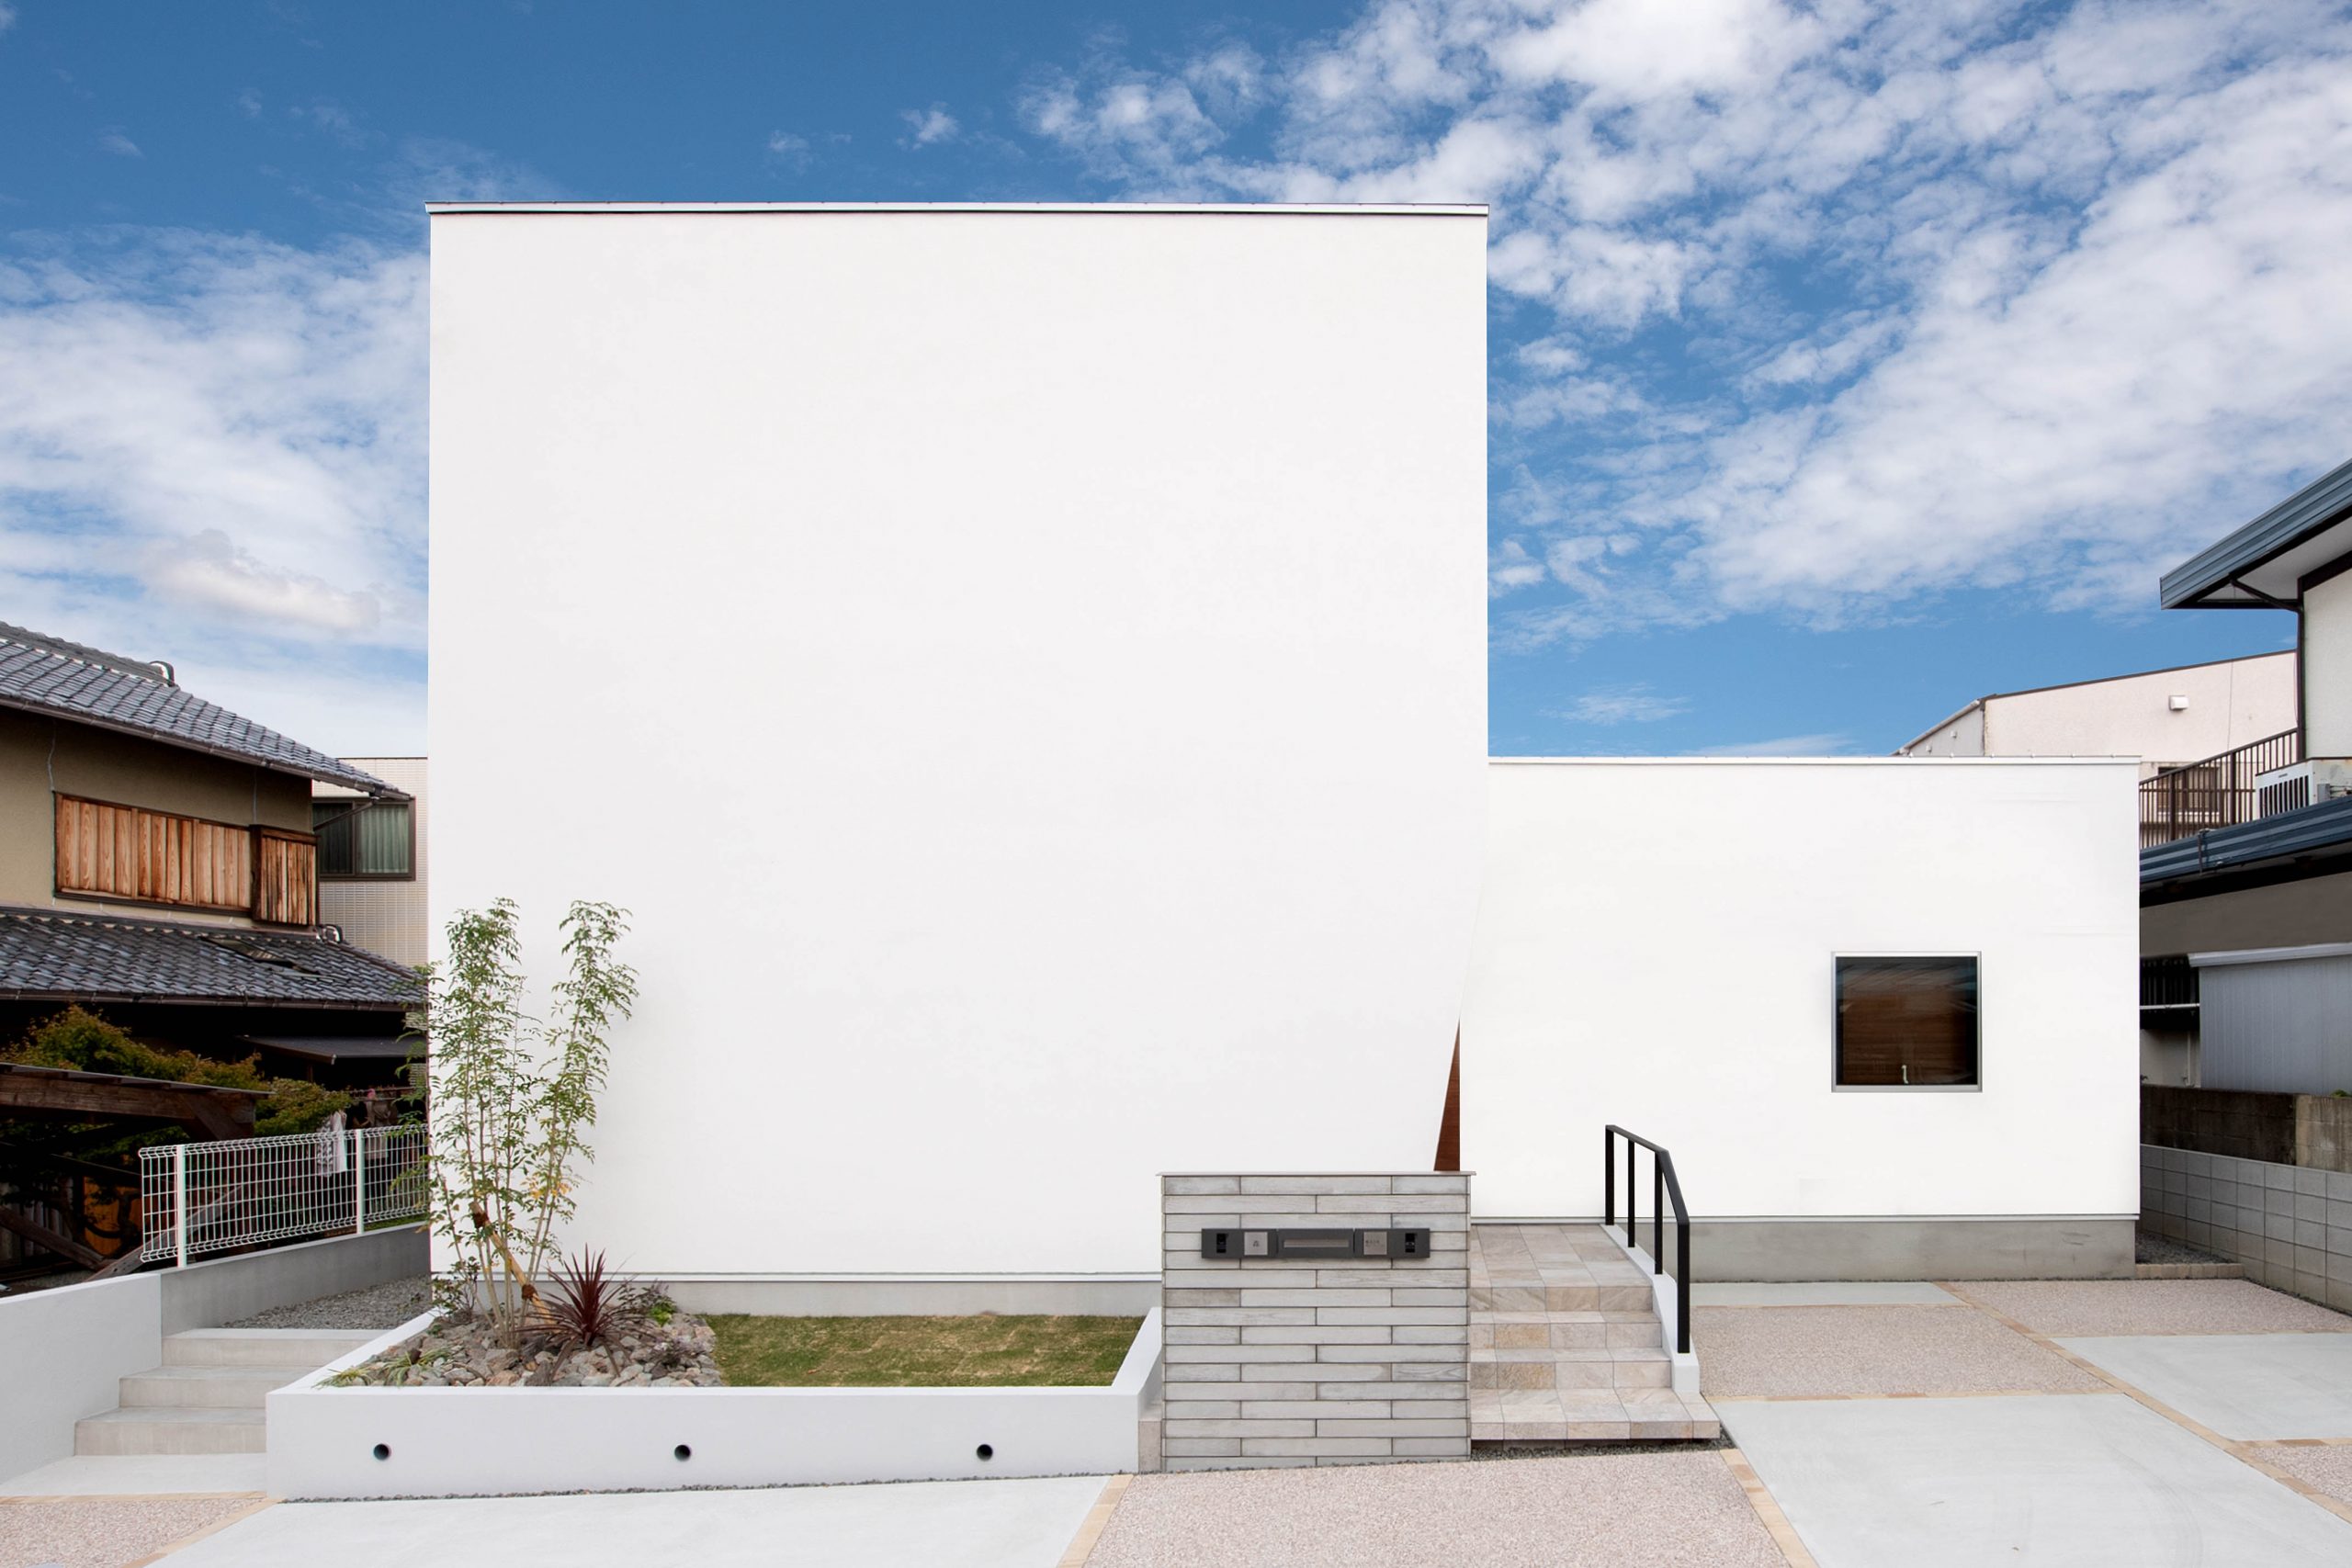 ３方家に囲まれた69坪の土地に建つ 真っ白な漆喰仕上げのコートヤードハウス